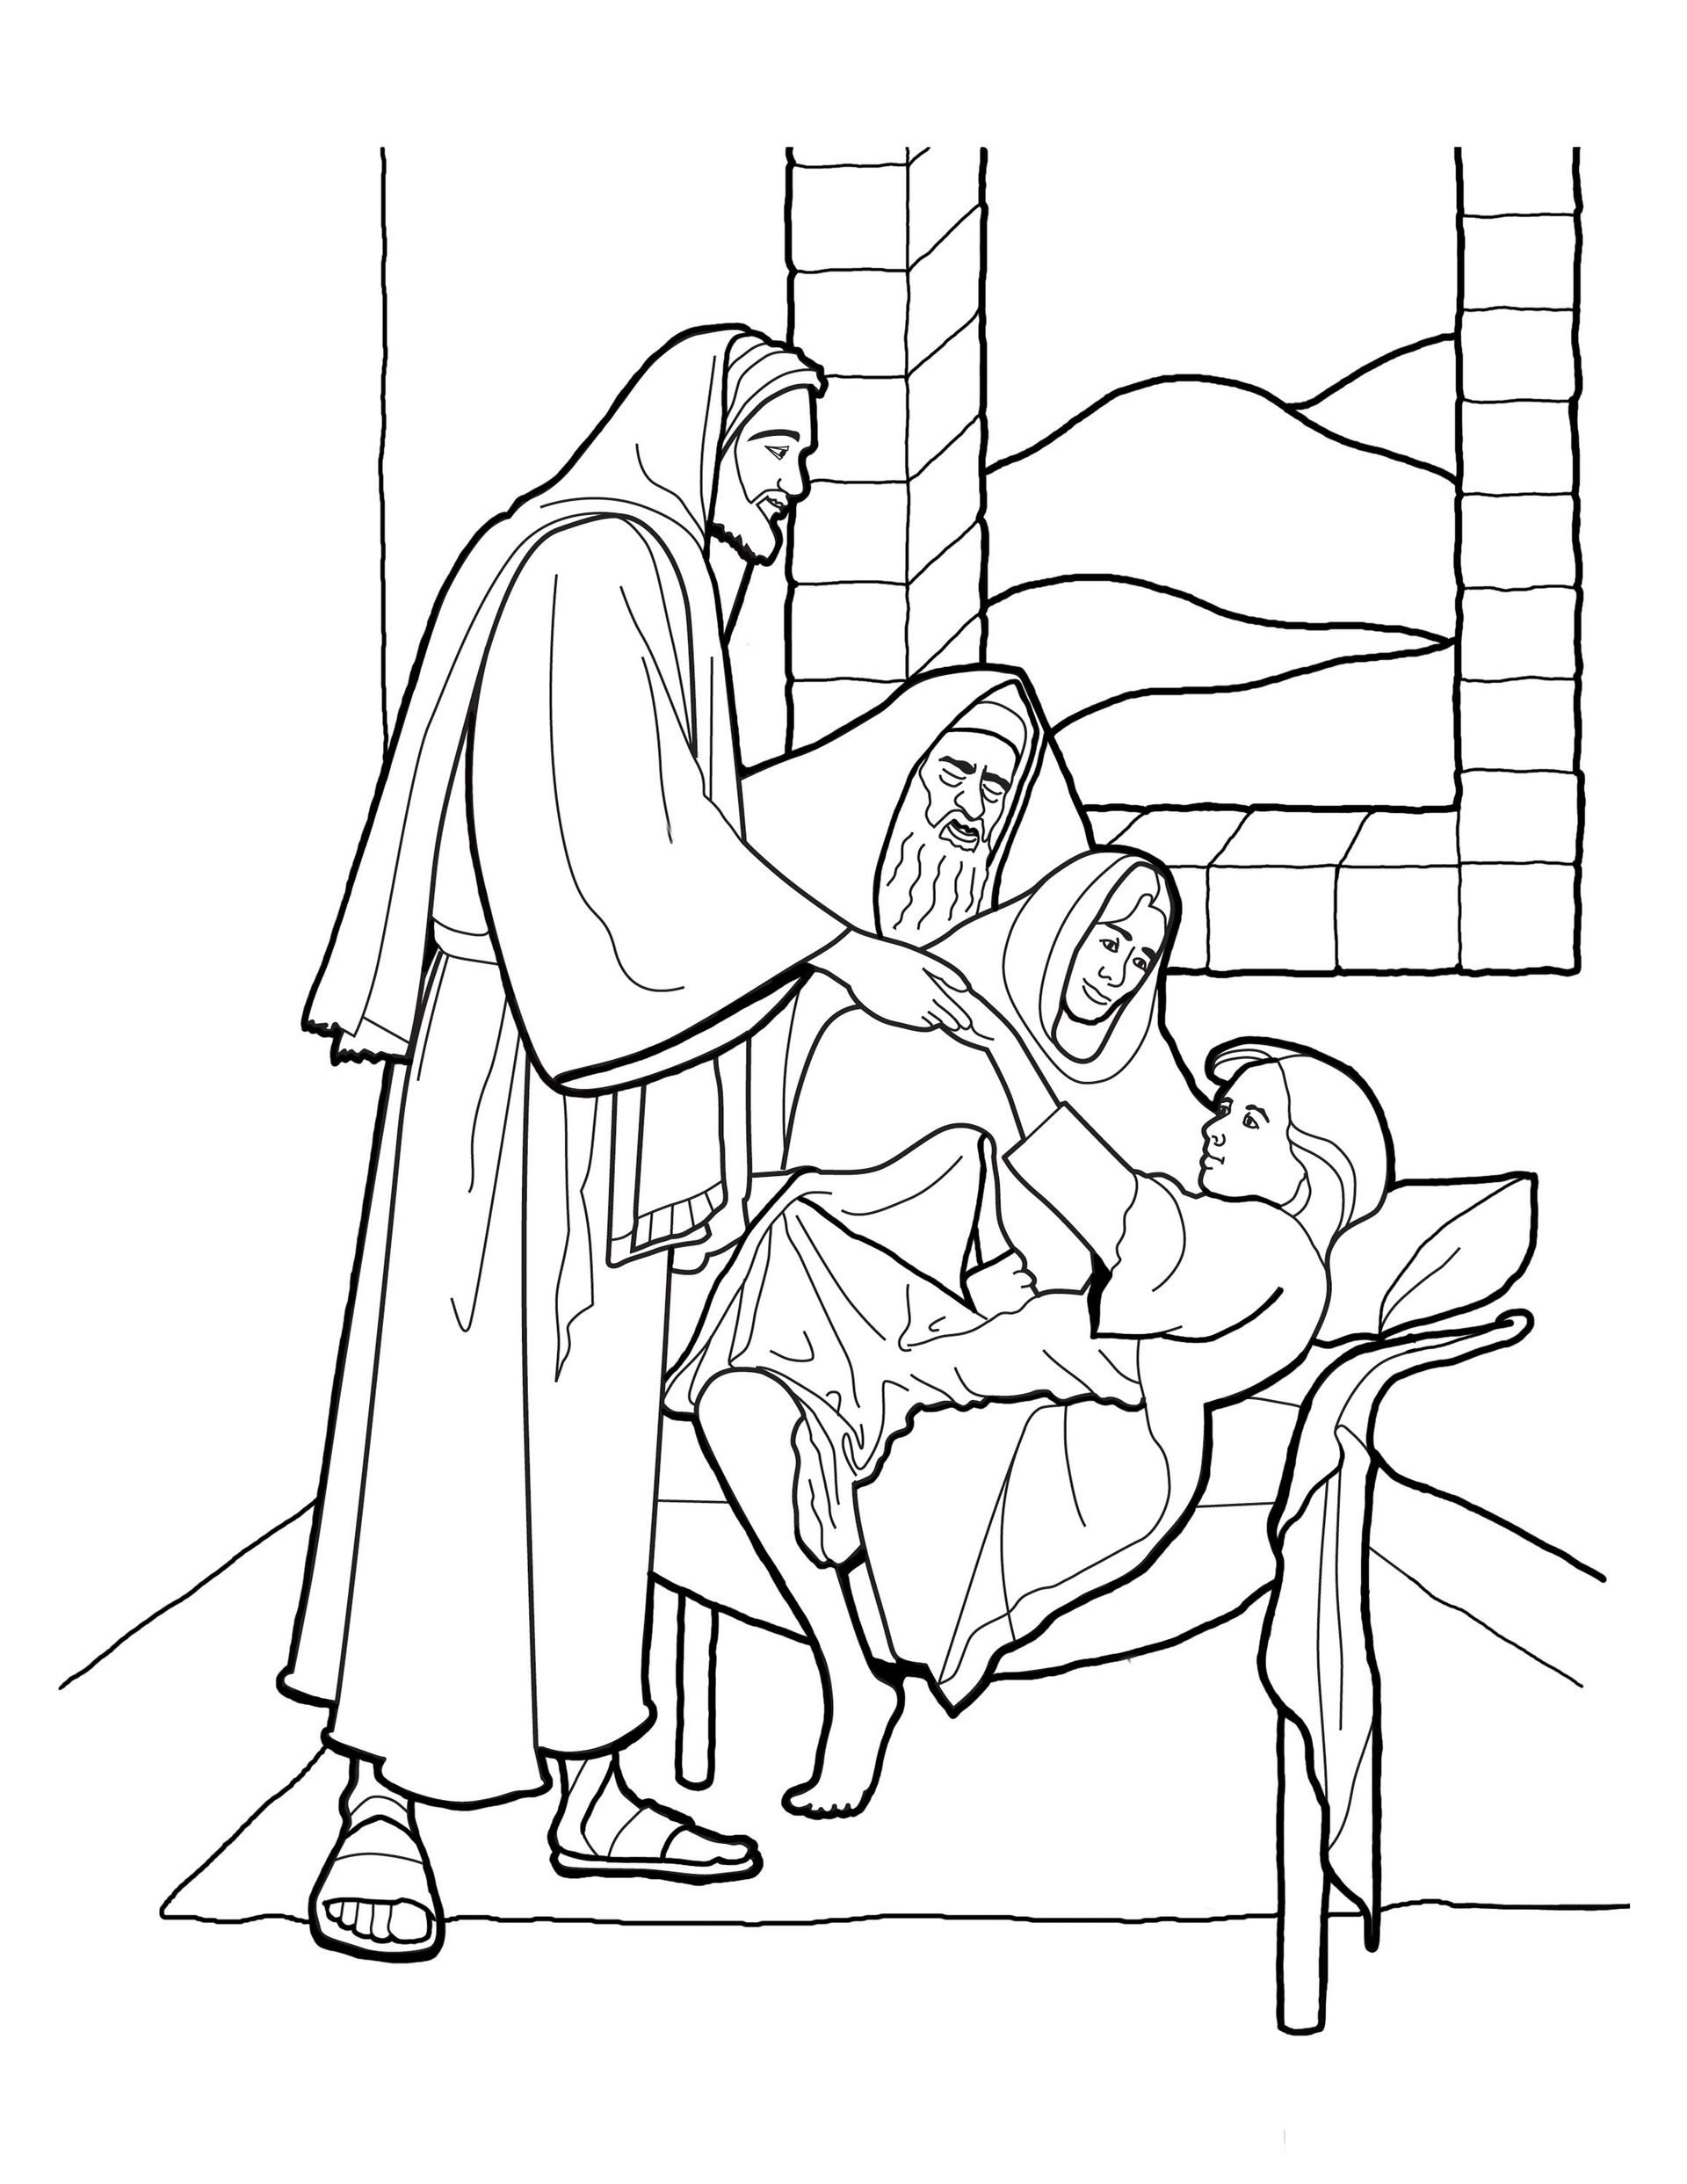 Boceto de Cristo que levanta a la hija de Jairo, basado en el cuadro de Greg Olsen.